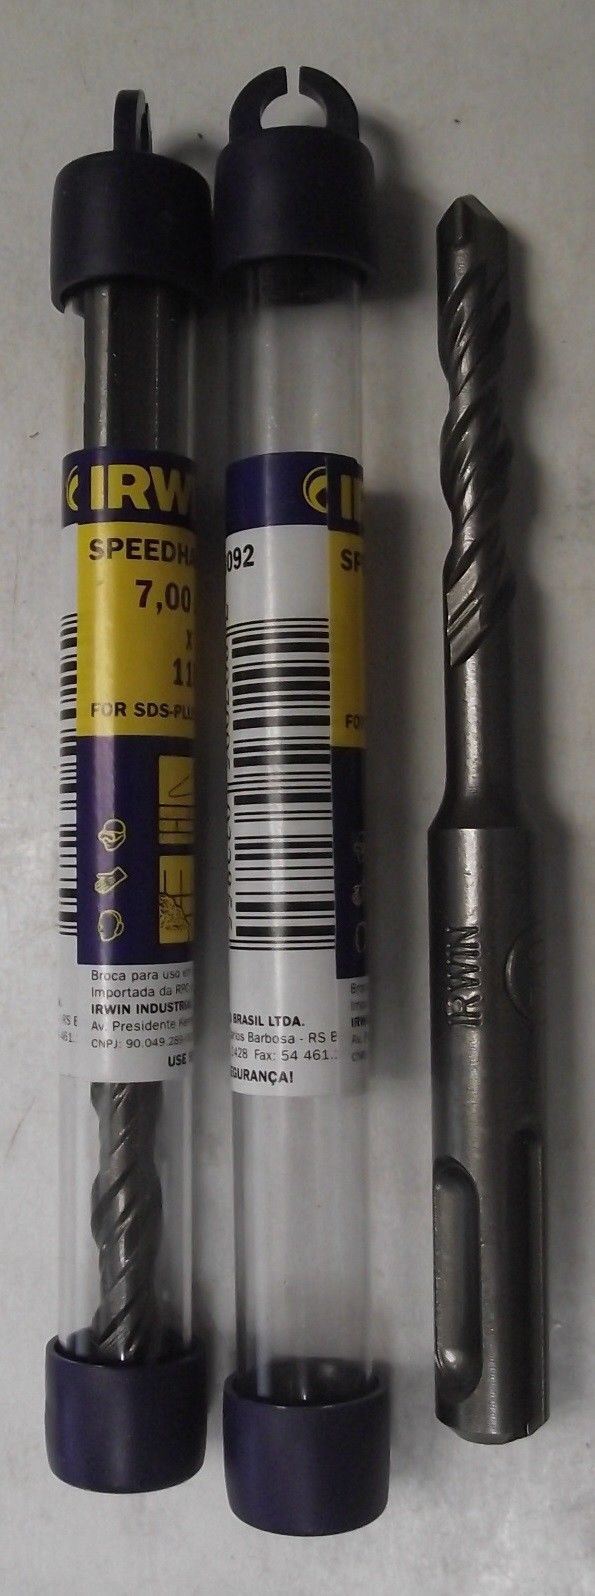 Irwin 13092 7mm x 110mm SDS Plus Speedhammer Hammer Drill Bits 2pcs.